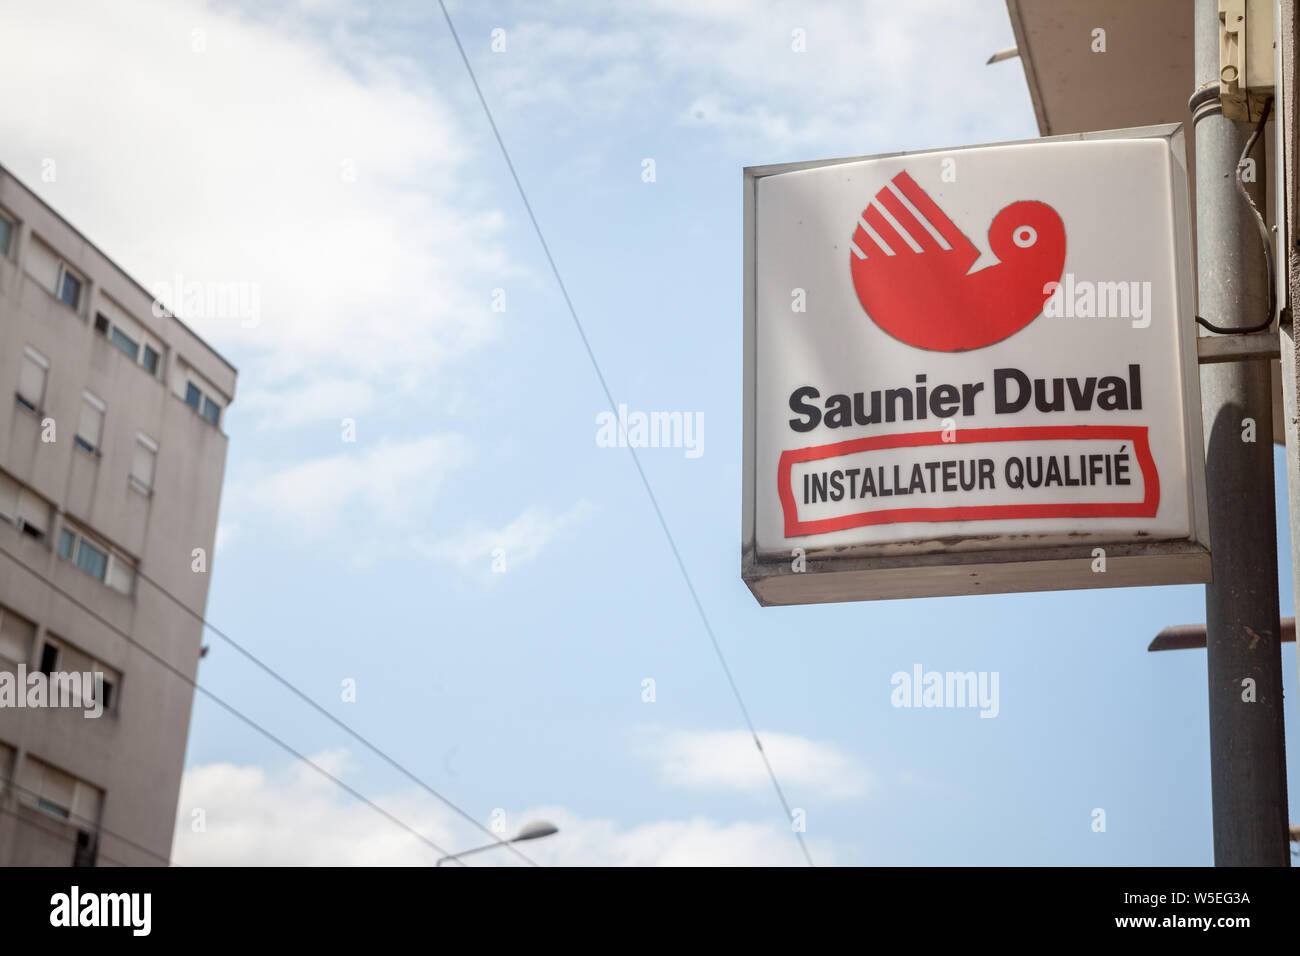 Lione, Francia - 15 luglio 2019: Saunier Duval logo nella parte anteriore del loro rivenditore locale e tecnico. Saunier Duval è un marchio francese di acqua e riscaldamento Foto Stock